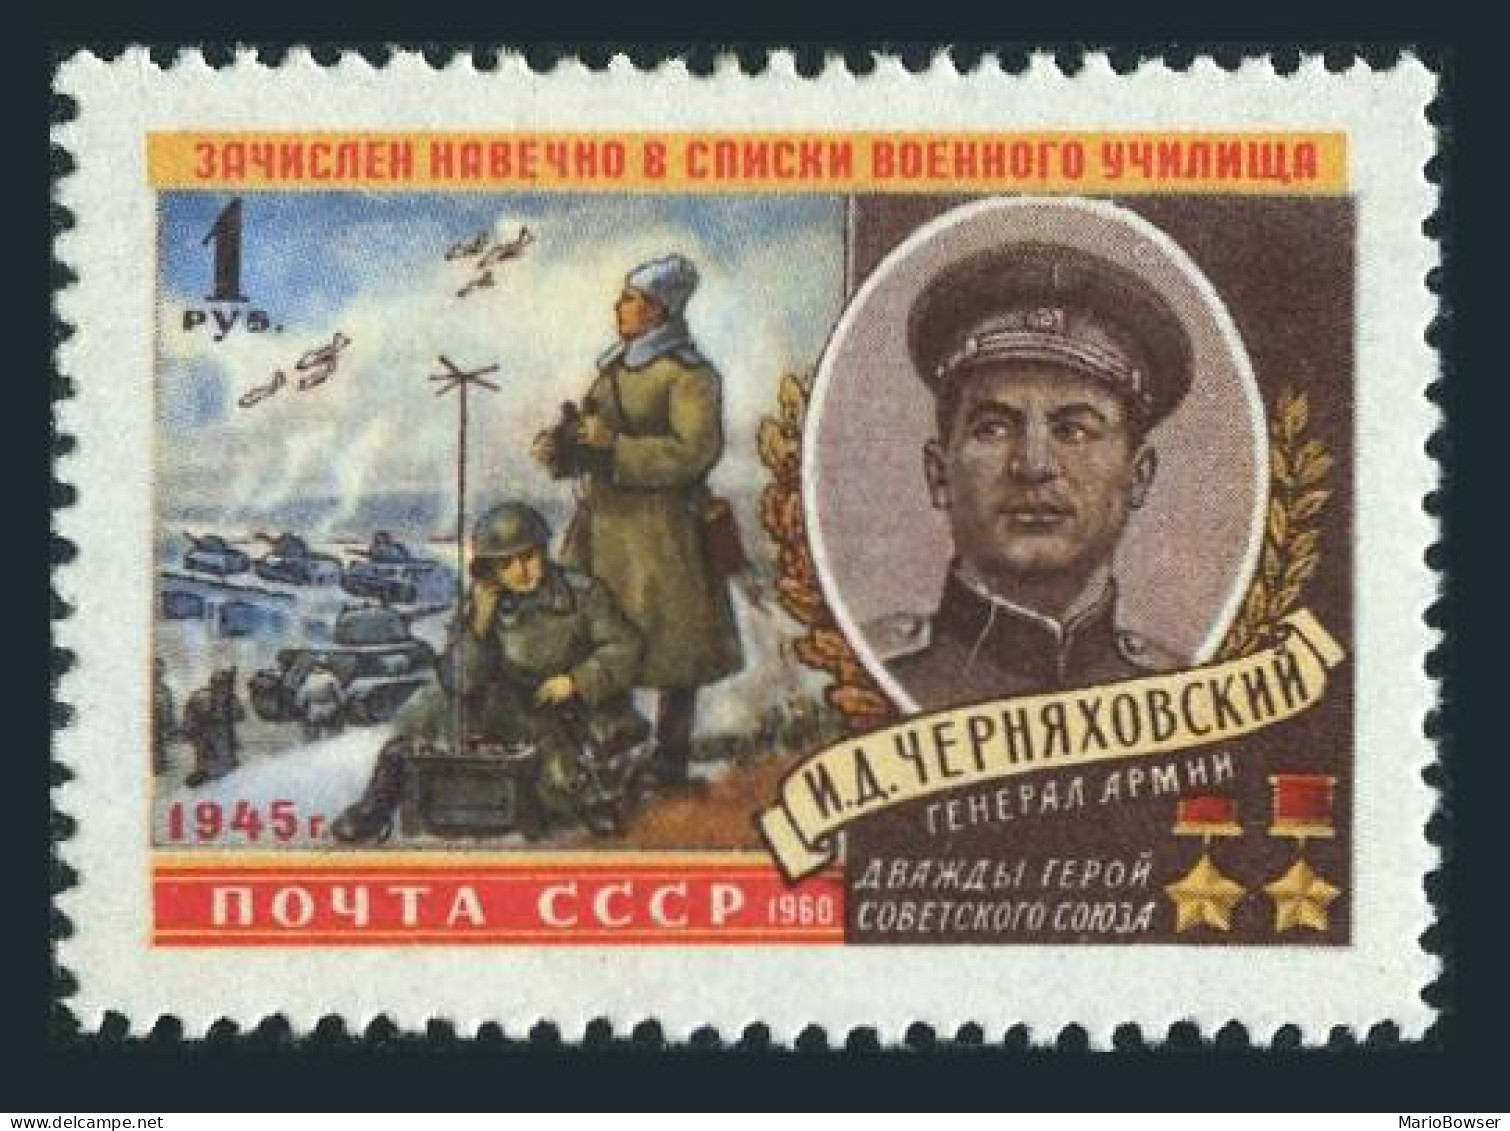 Russia 2322, MNH. Michel 2342. General I.D.Tcherniakovski, WW II Hero. 1960. - Unused Stamps